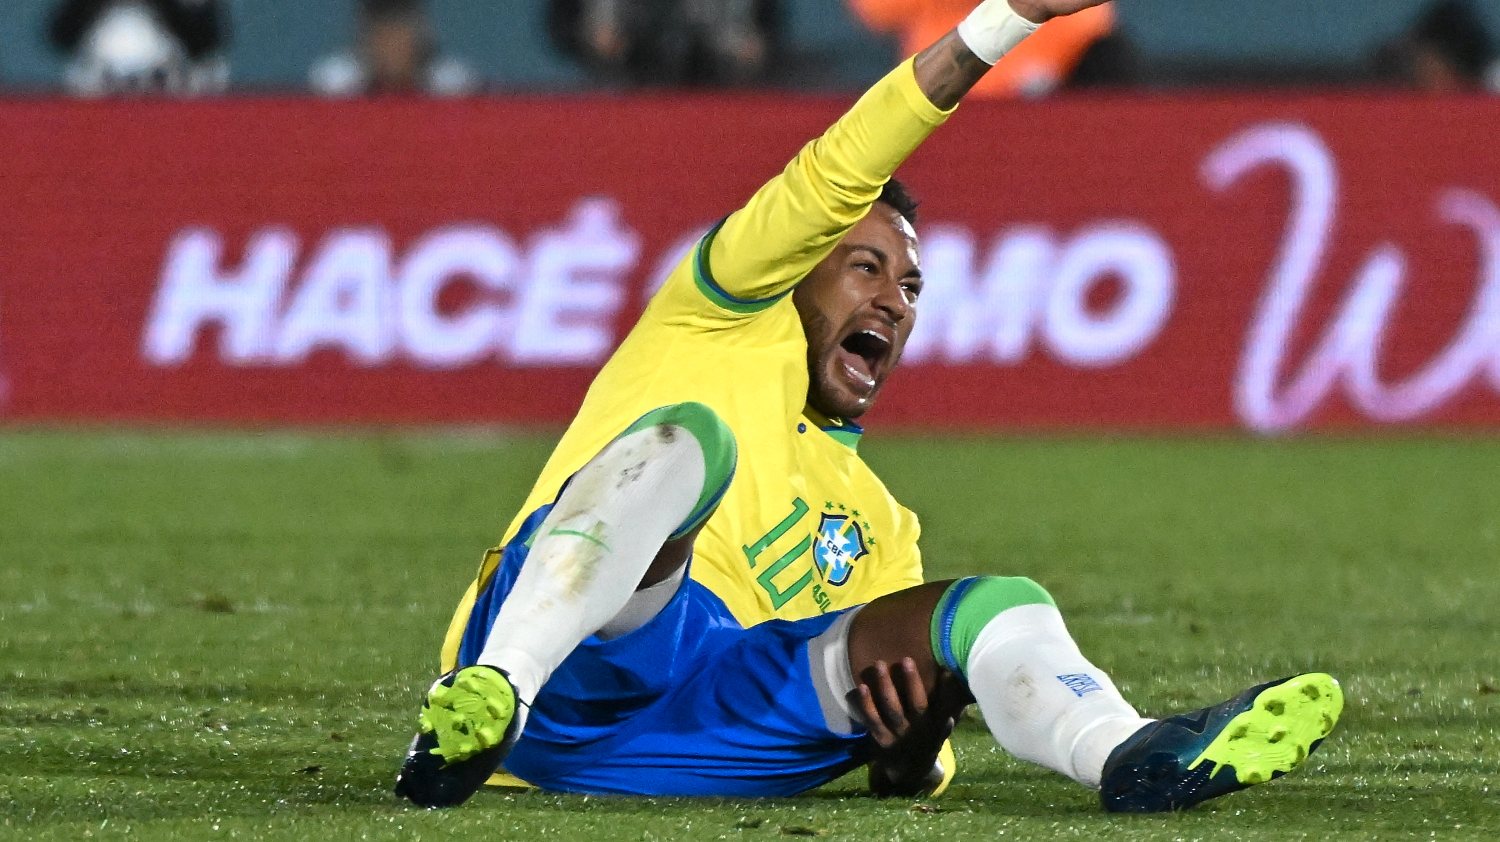 Neymar lesionou-se perto do intervalo do jogo do Brasil no Uruguai, quebrando uma série de jogos consecutivos após uma ausência de seis meses